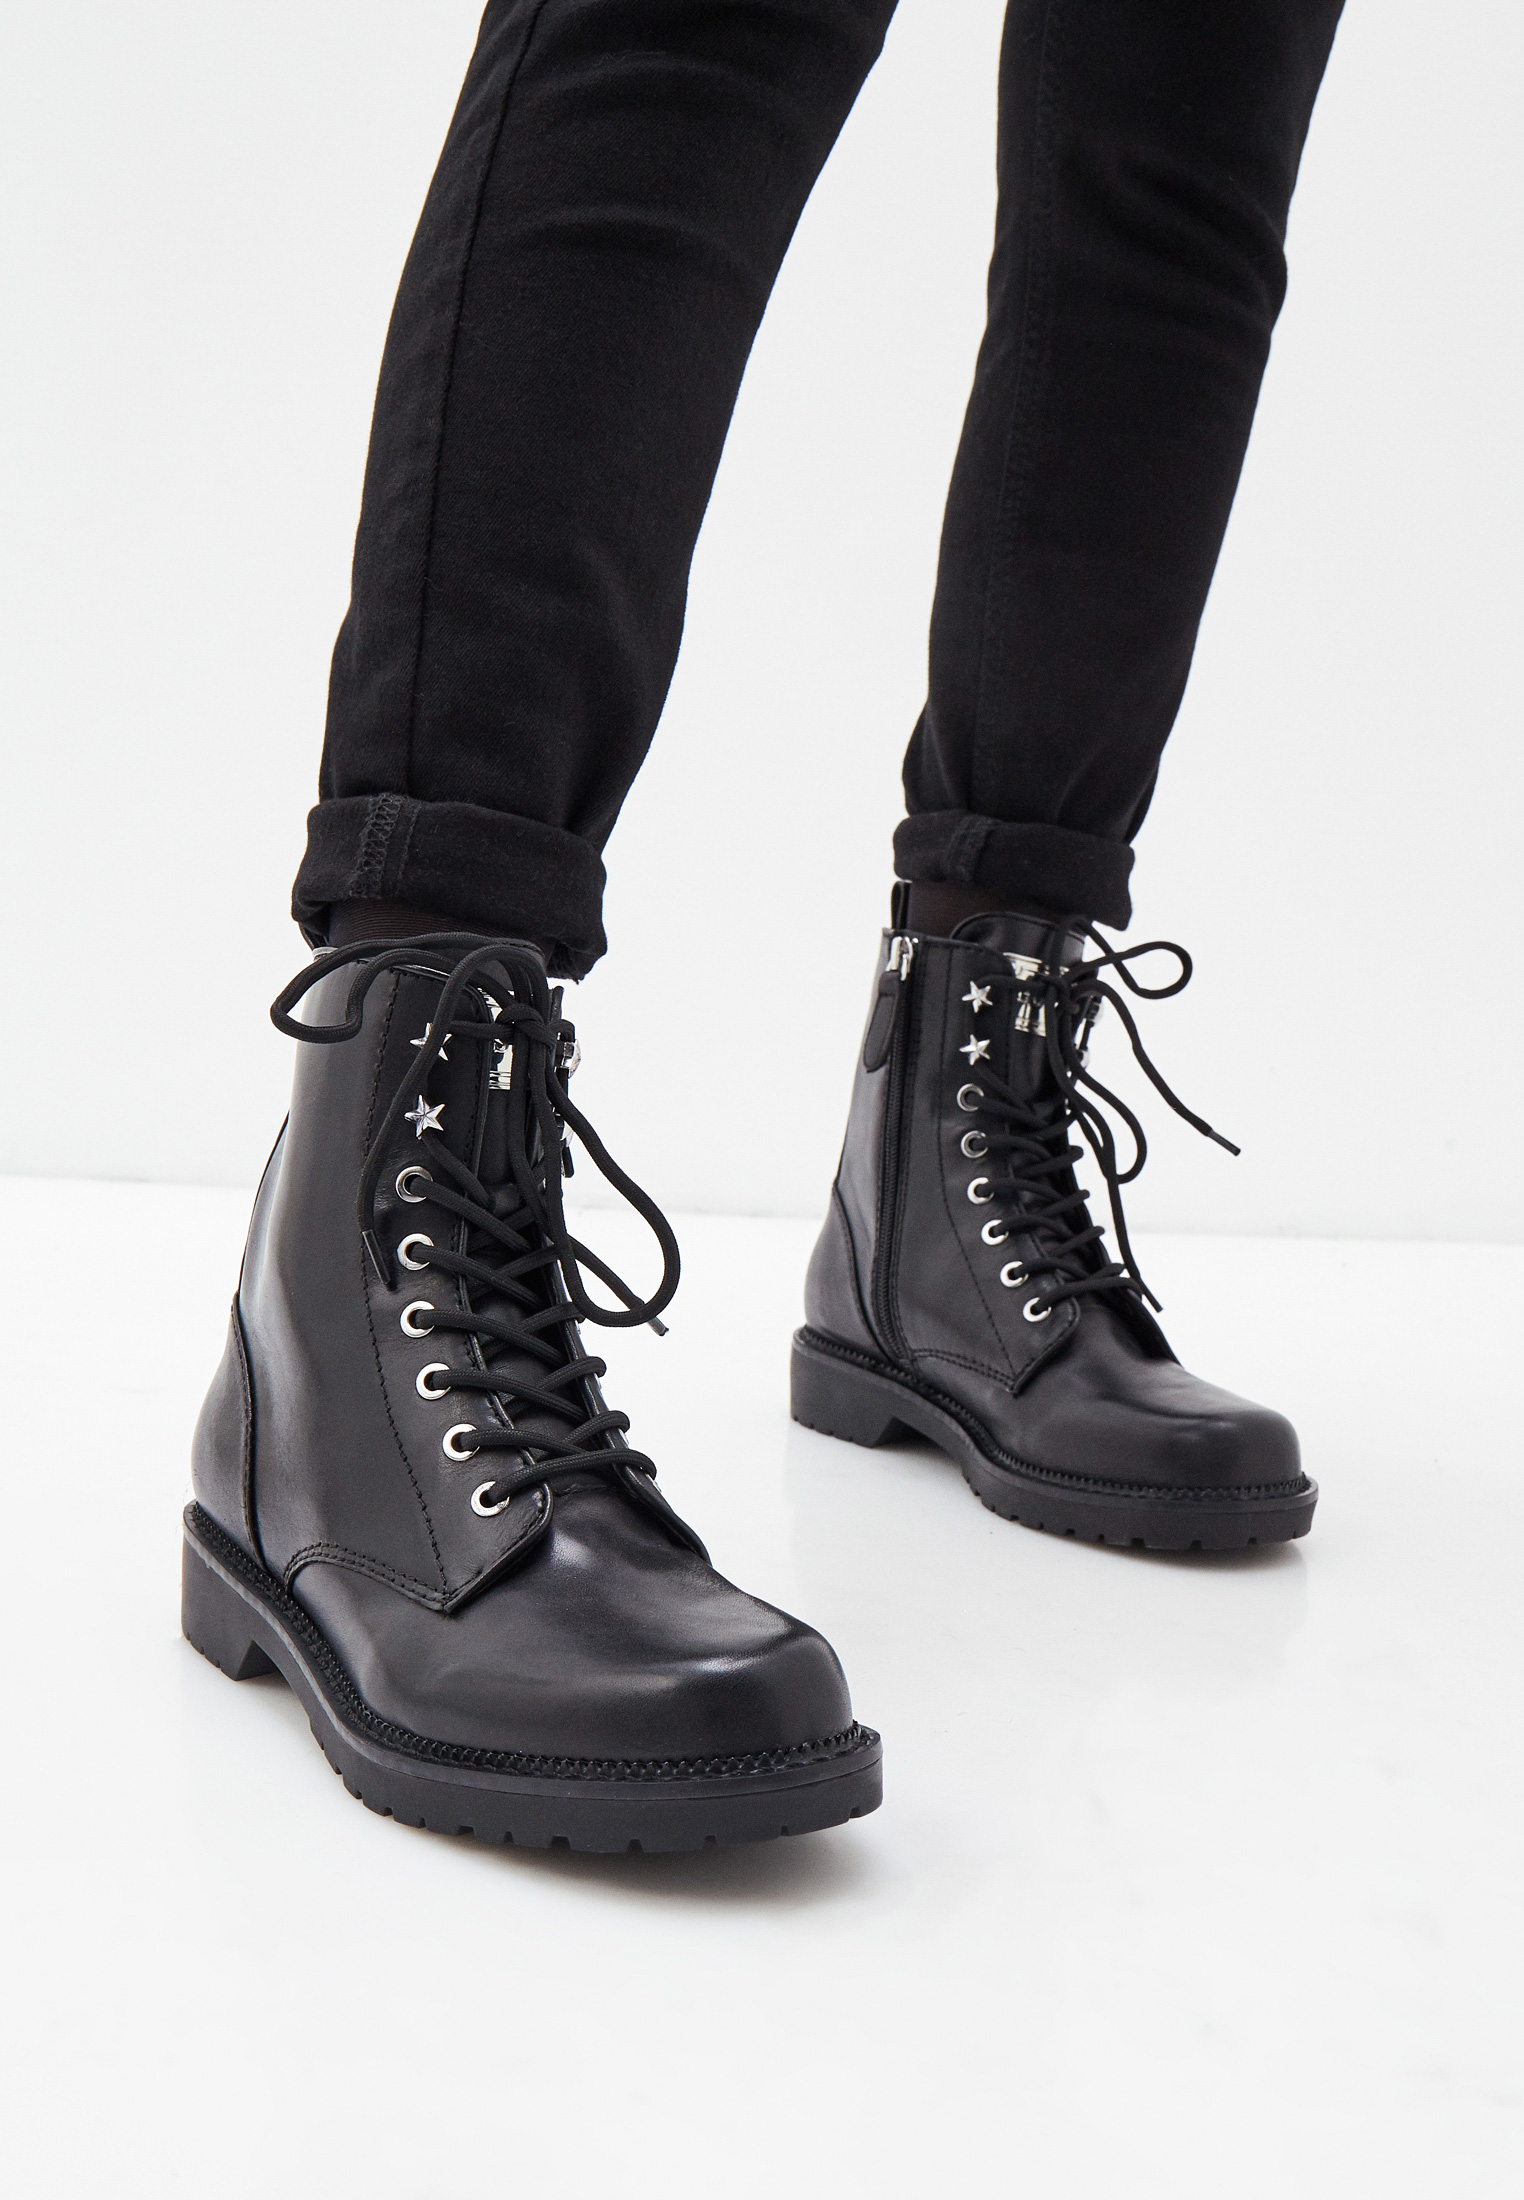 Женские ботинки Guess (Гесс) FL7TS2 LEA10 внешний материал натуральная  кожа; цвет черный купить за 11510 руб.